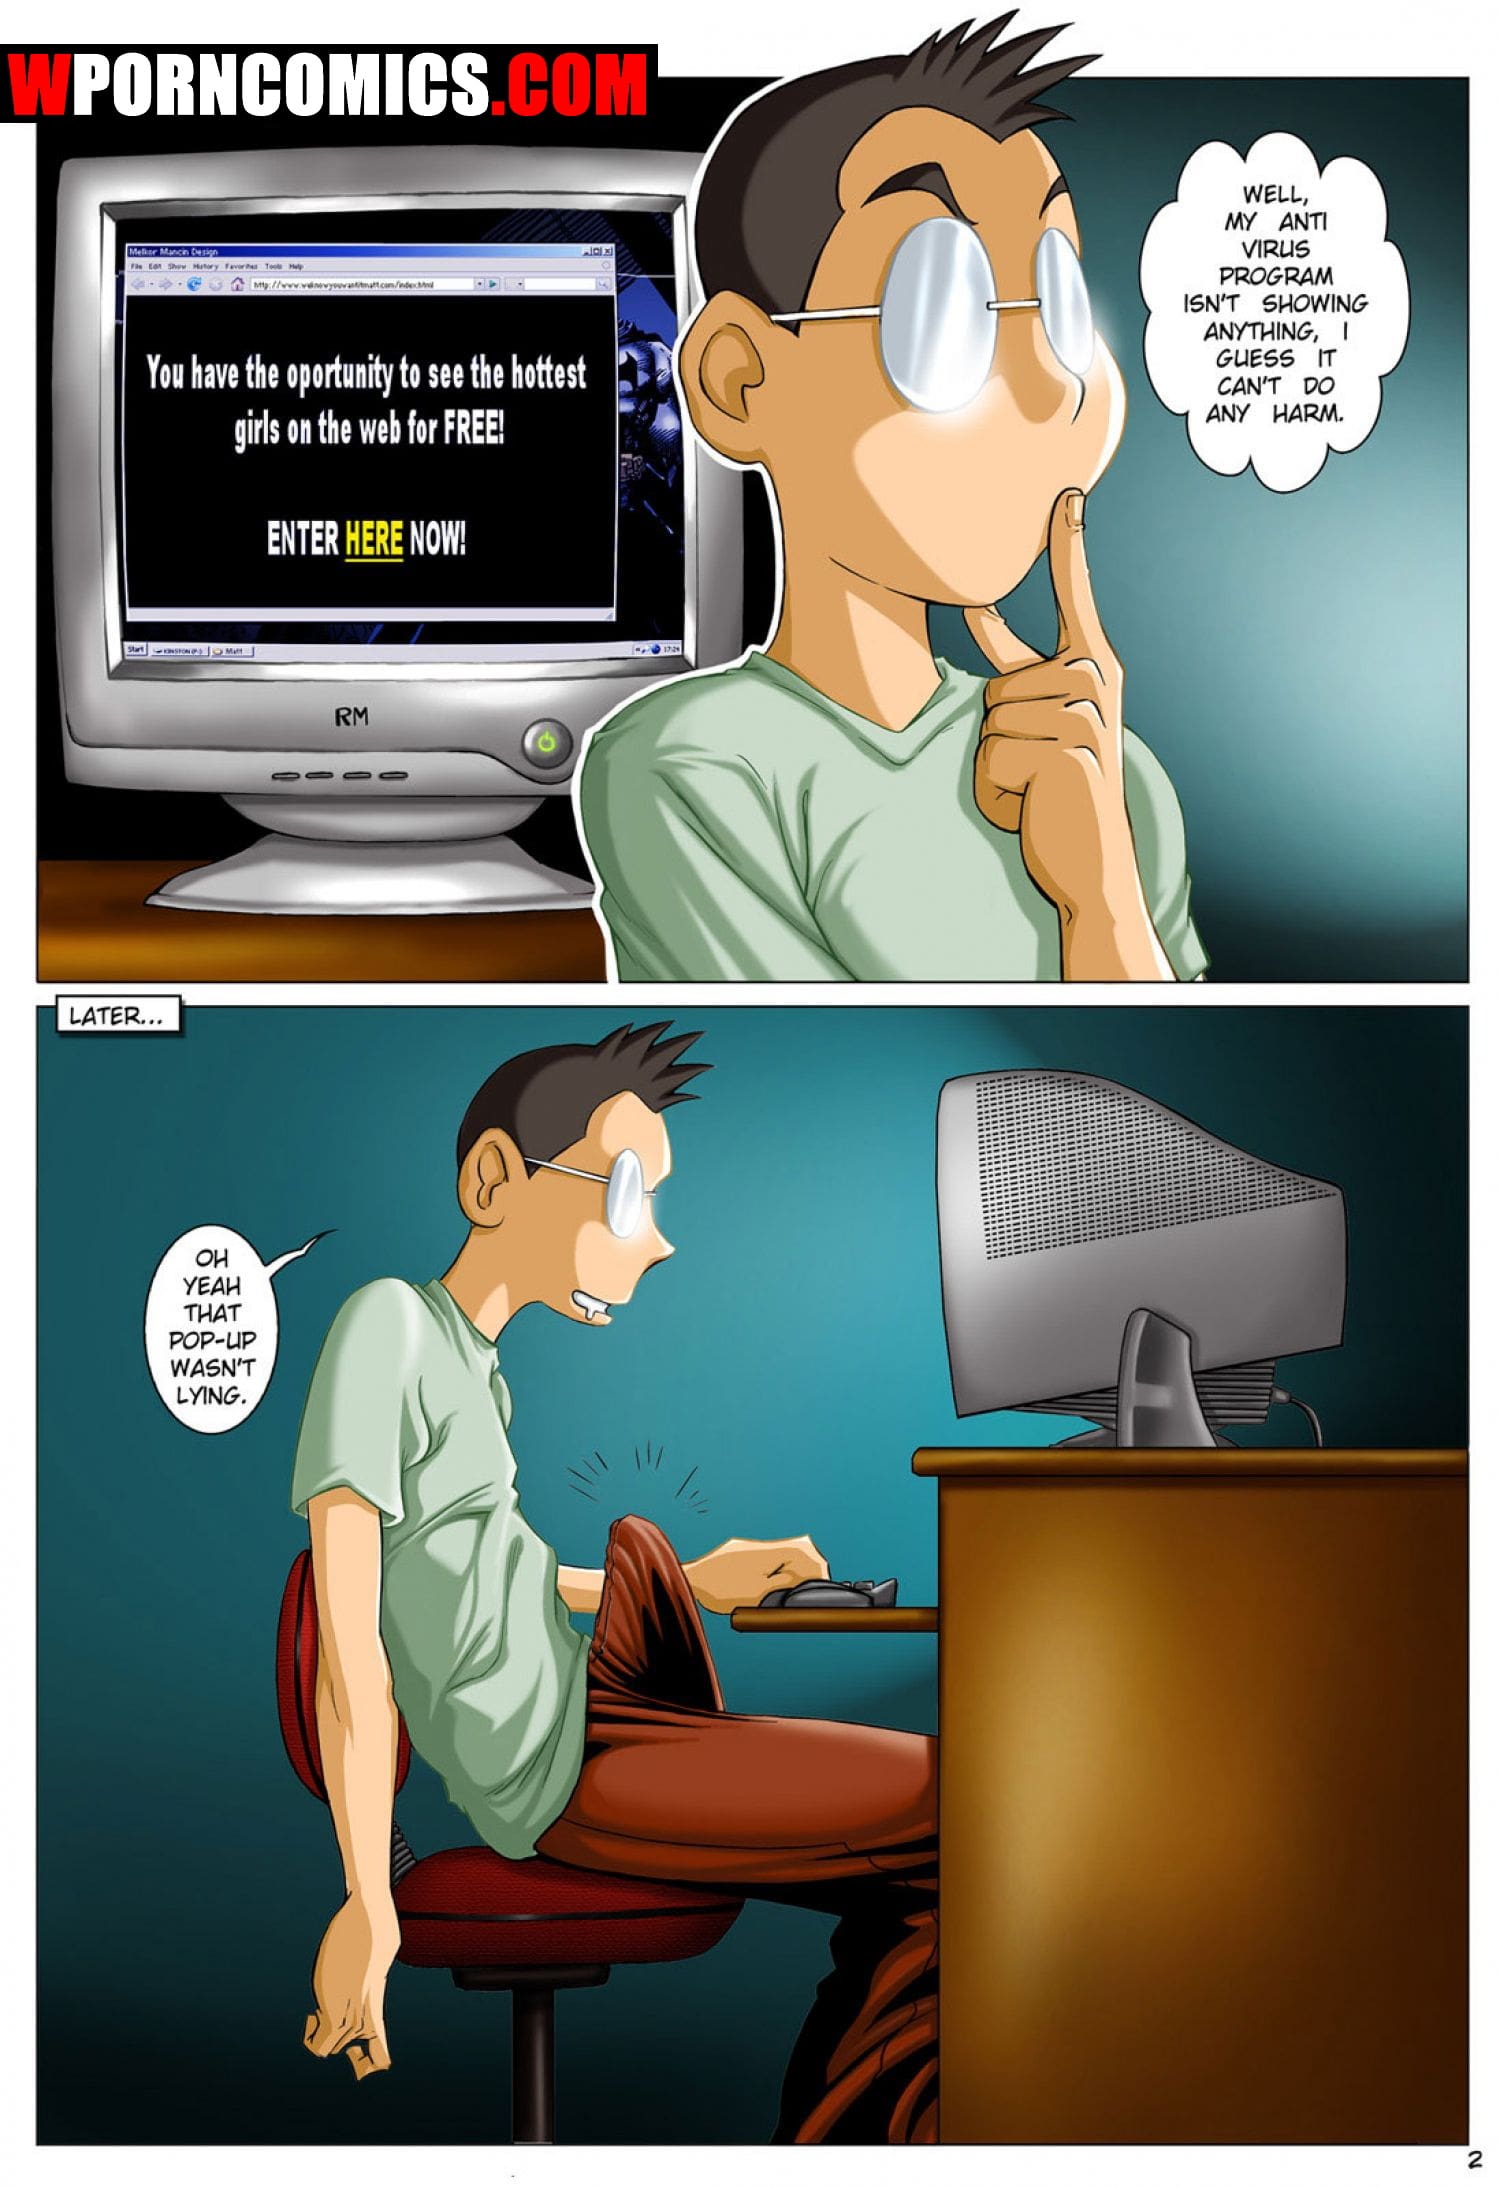 Computer Cartoon Porn - âœ…ï¸ Porn comic A Geek Life â€“ sex comic computer | Porn comics in English for  adults only | sexkomix2.com